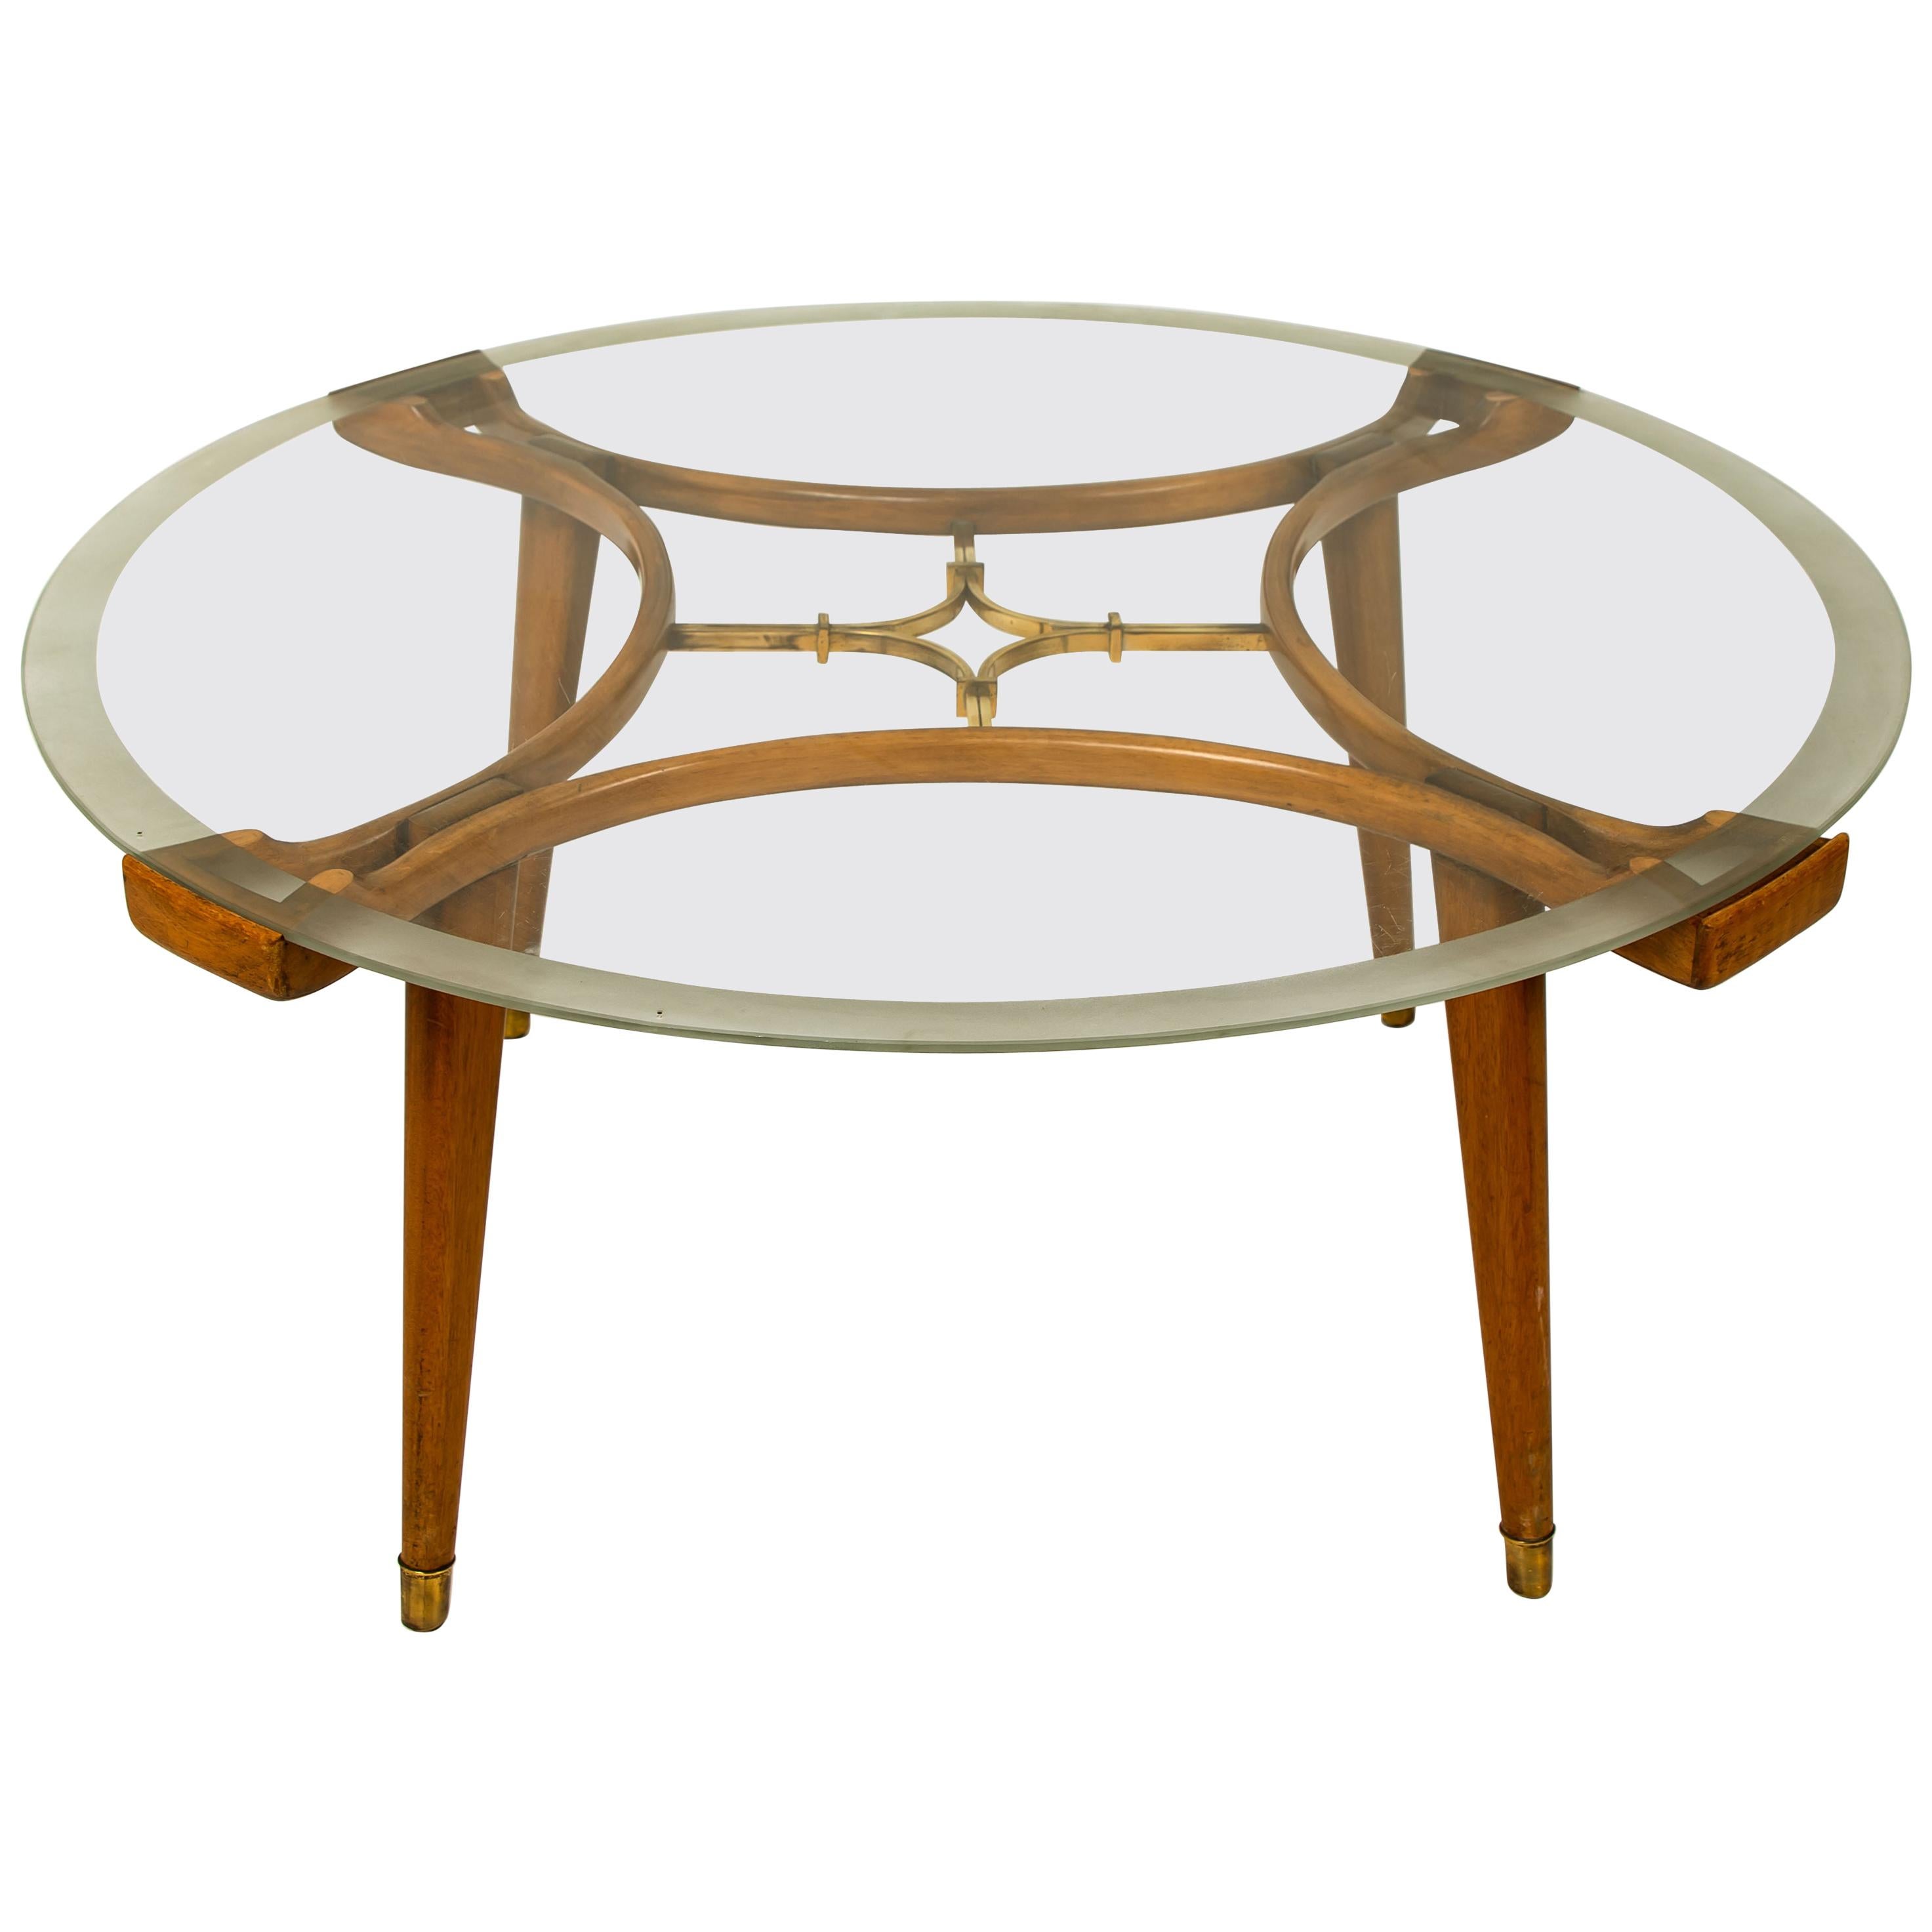 Table basse originale, conçue par William Watting, produite par Fristho, Pays-Bas, années 1950. Un design très particulier grâce au bois de noyer chaud et organique combiné à un plateau en verre transparent. Le centre présente un magnifique détail